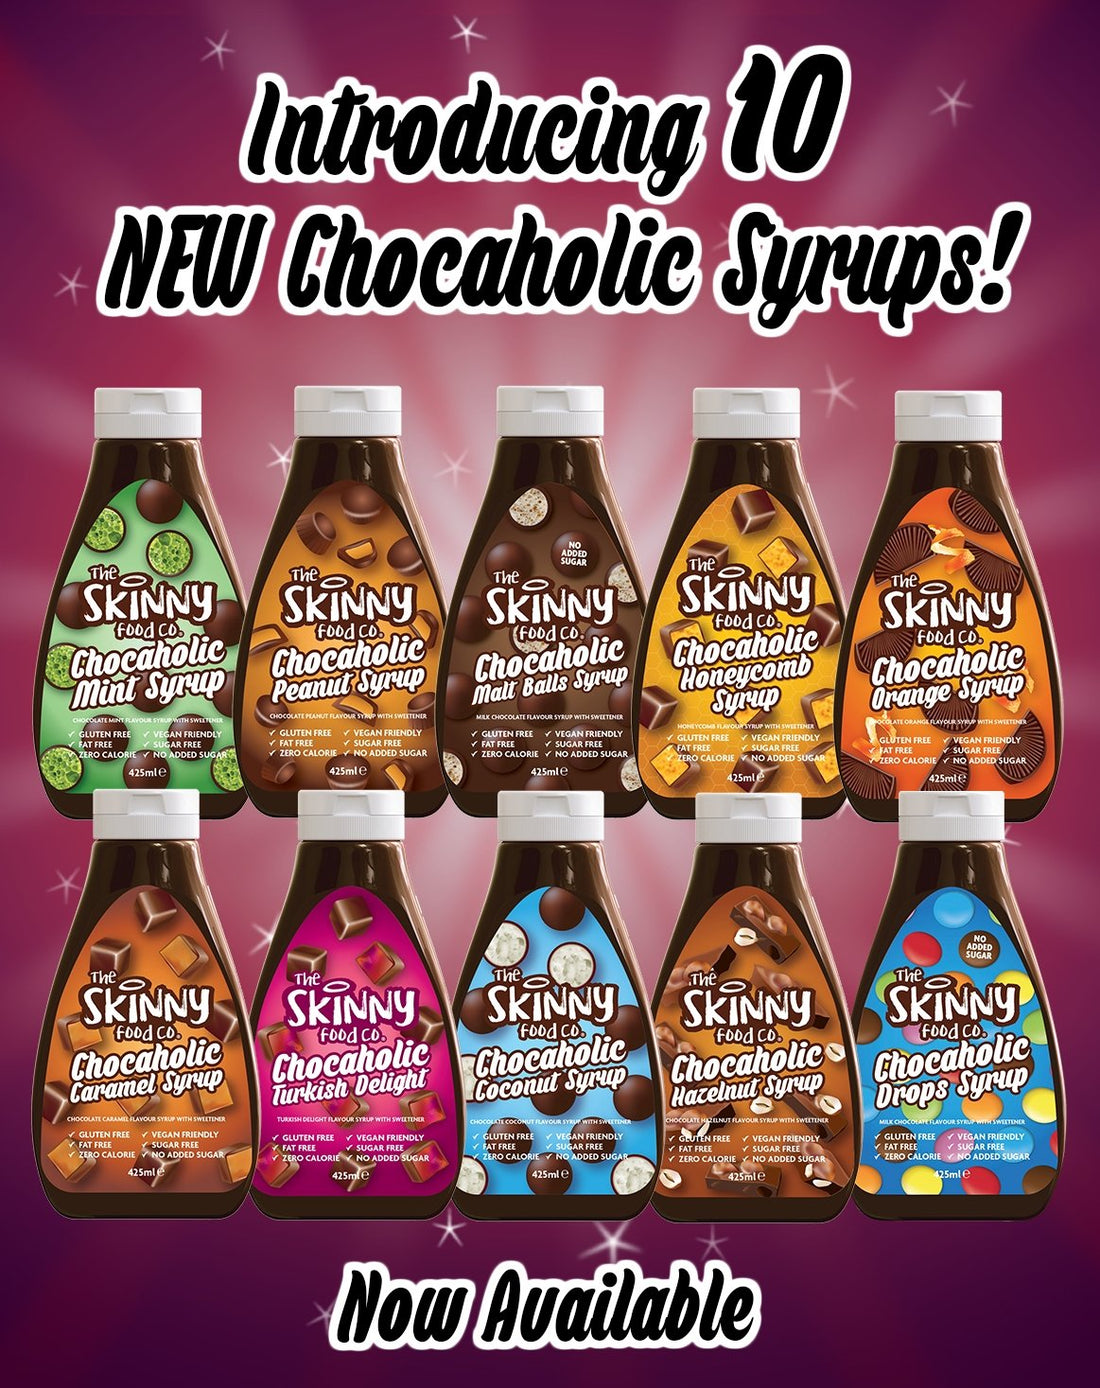 Uvedenie nového produktu: Čokoholické čokoládové sirupy s nulovým obsahom kalórií - theskinnyfoodco